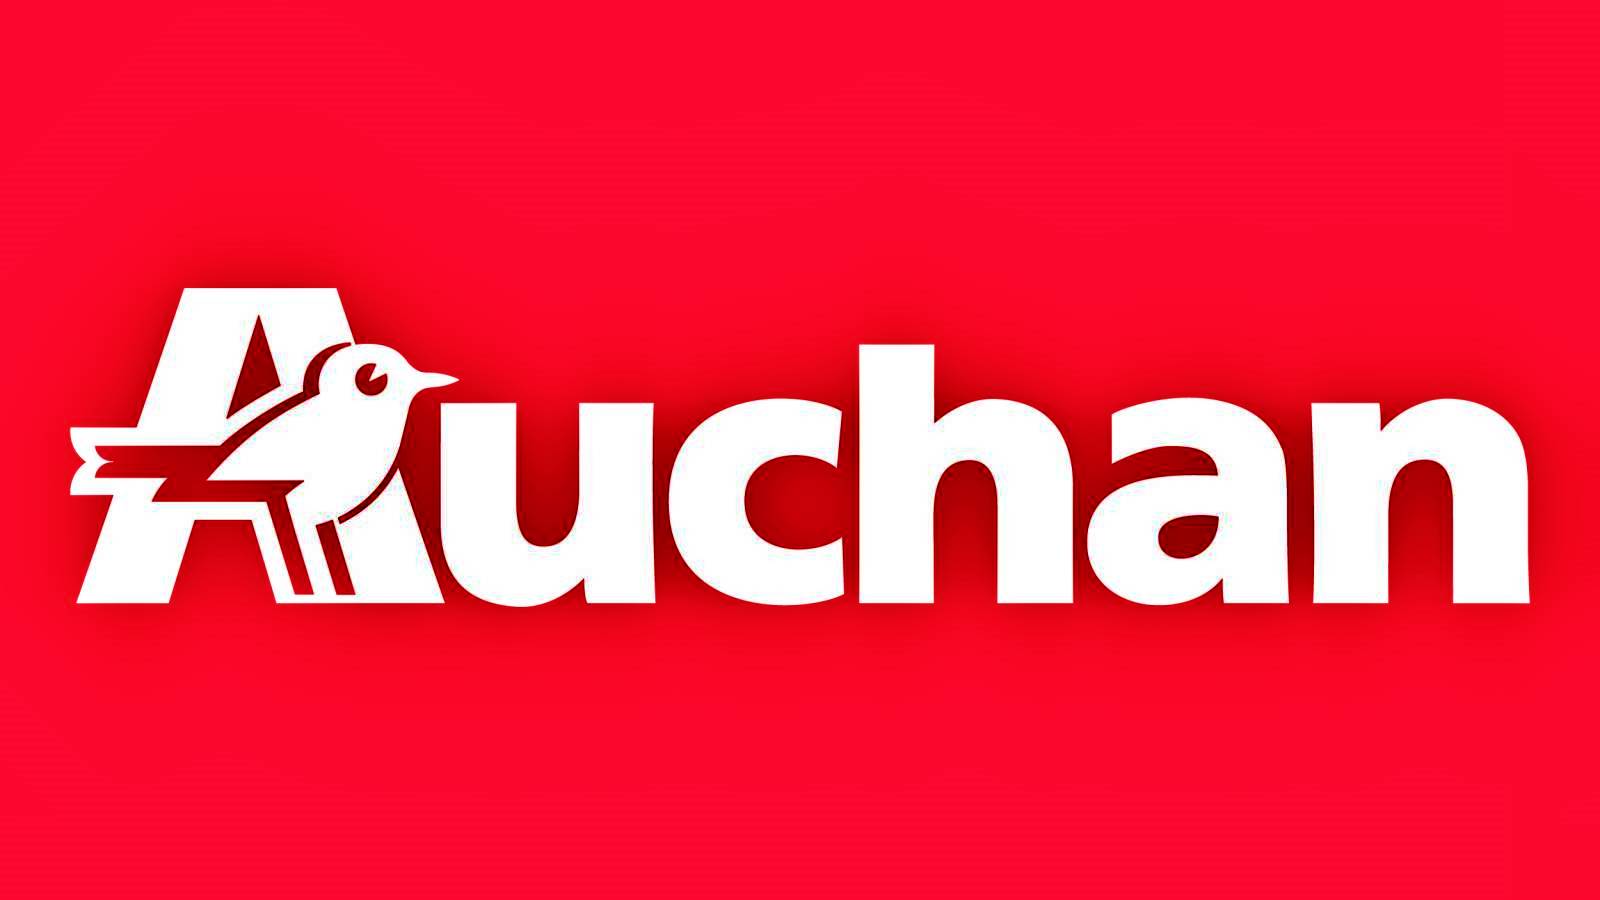 WAŻNA premiera Auchan już teraz zapowiedziana rumuńskim klientom